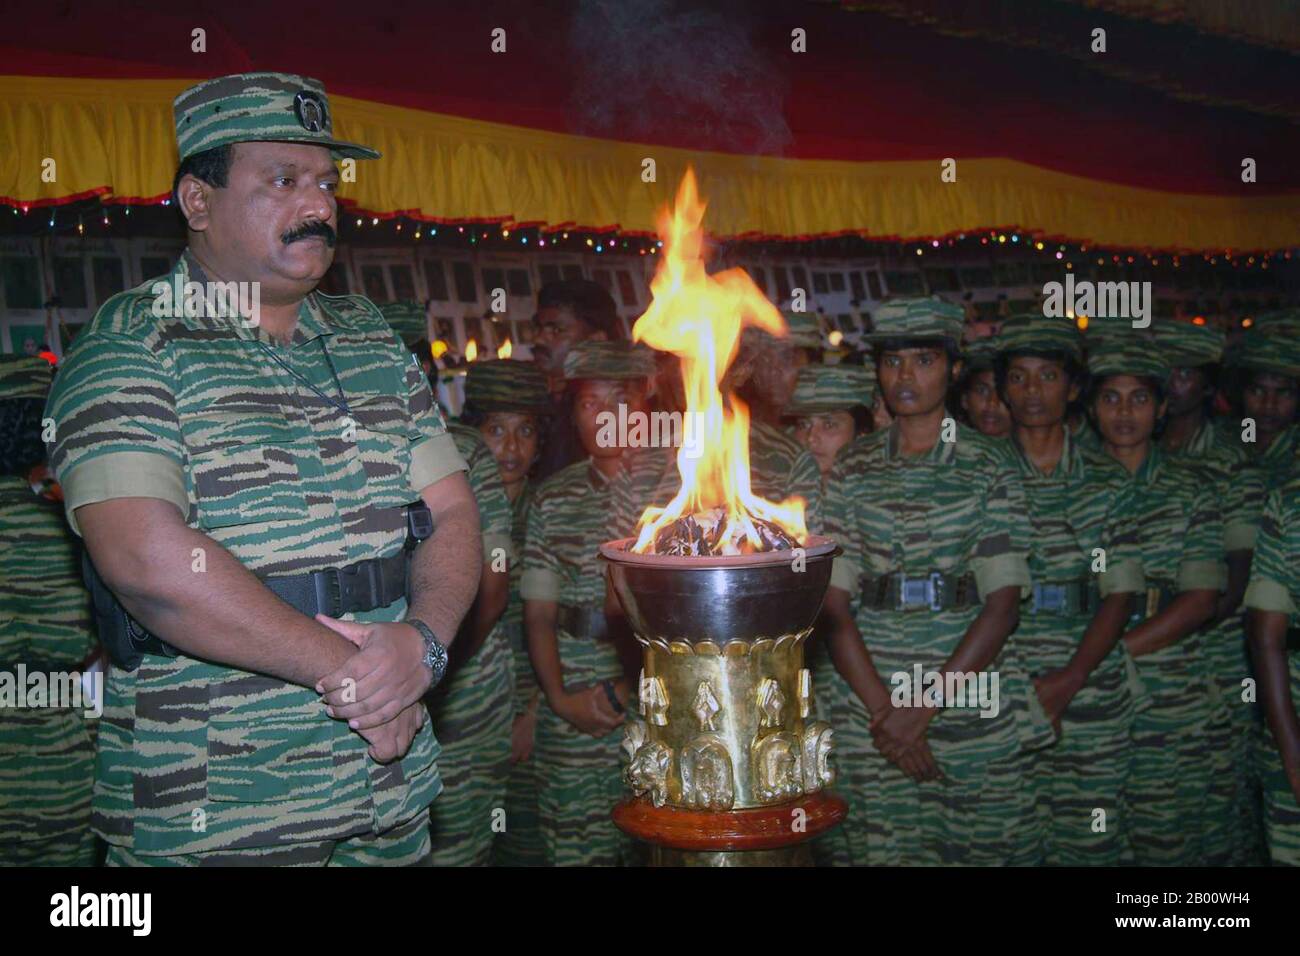 Sri Lanka: Befreiungstiger von Tamil Eelam (LTTE) Führer Velupillai Prabhakaran vor einer flammenden Urne bei einer Zeremonie mit weiblichen LTTE Truppen, c. 2006. Der Bürgerkrieg in Sri Lanka begann am 23. Juli 1983 und entwickelte sich schnell zu einem ständigen Aufstand gegen die Regierung Colombo durch die Befreiungstiger von Tamil Eelam (LTTE), allgemein bekannt als die Tamil Tigers, und andere wenige Rebellengruppen, Die im Norden und Osten der Insel für die Schaffung eines unabhängigen tamilischen Staates namens Tamil Eelam kämpften. Nach einem 26-jährigen Militärfeldzug besiegte das srilankische Militär die LTTE im Mai 2009. Stockfoto